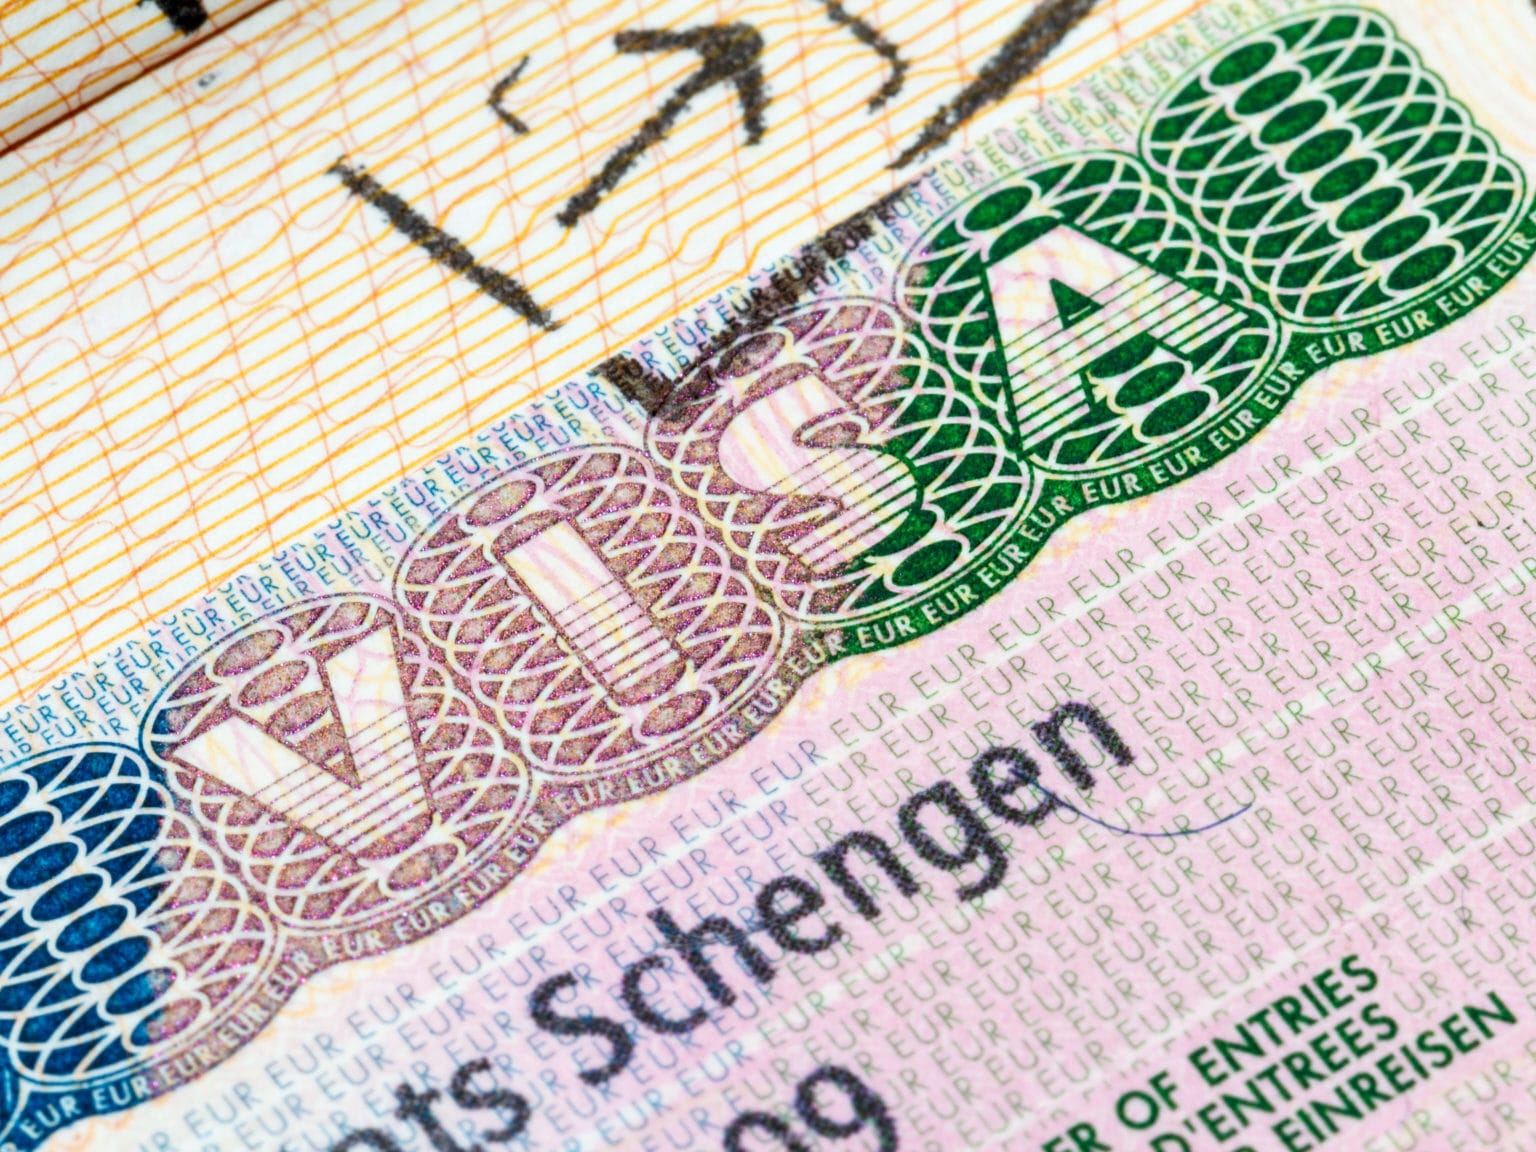 Стало известно, что правила получения Шенгена изменятся: что значит для россиян перевод заявления в цифровую форму?